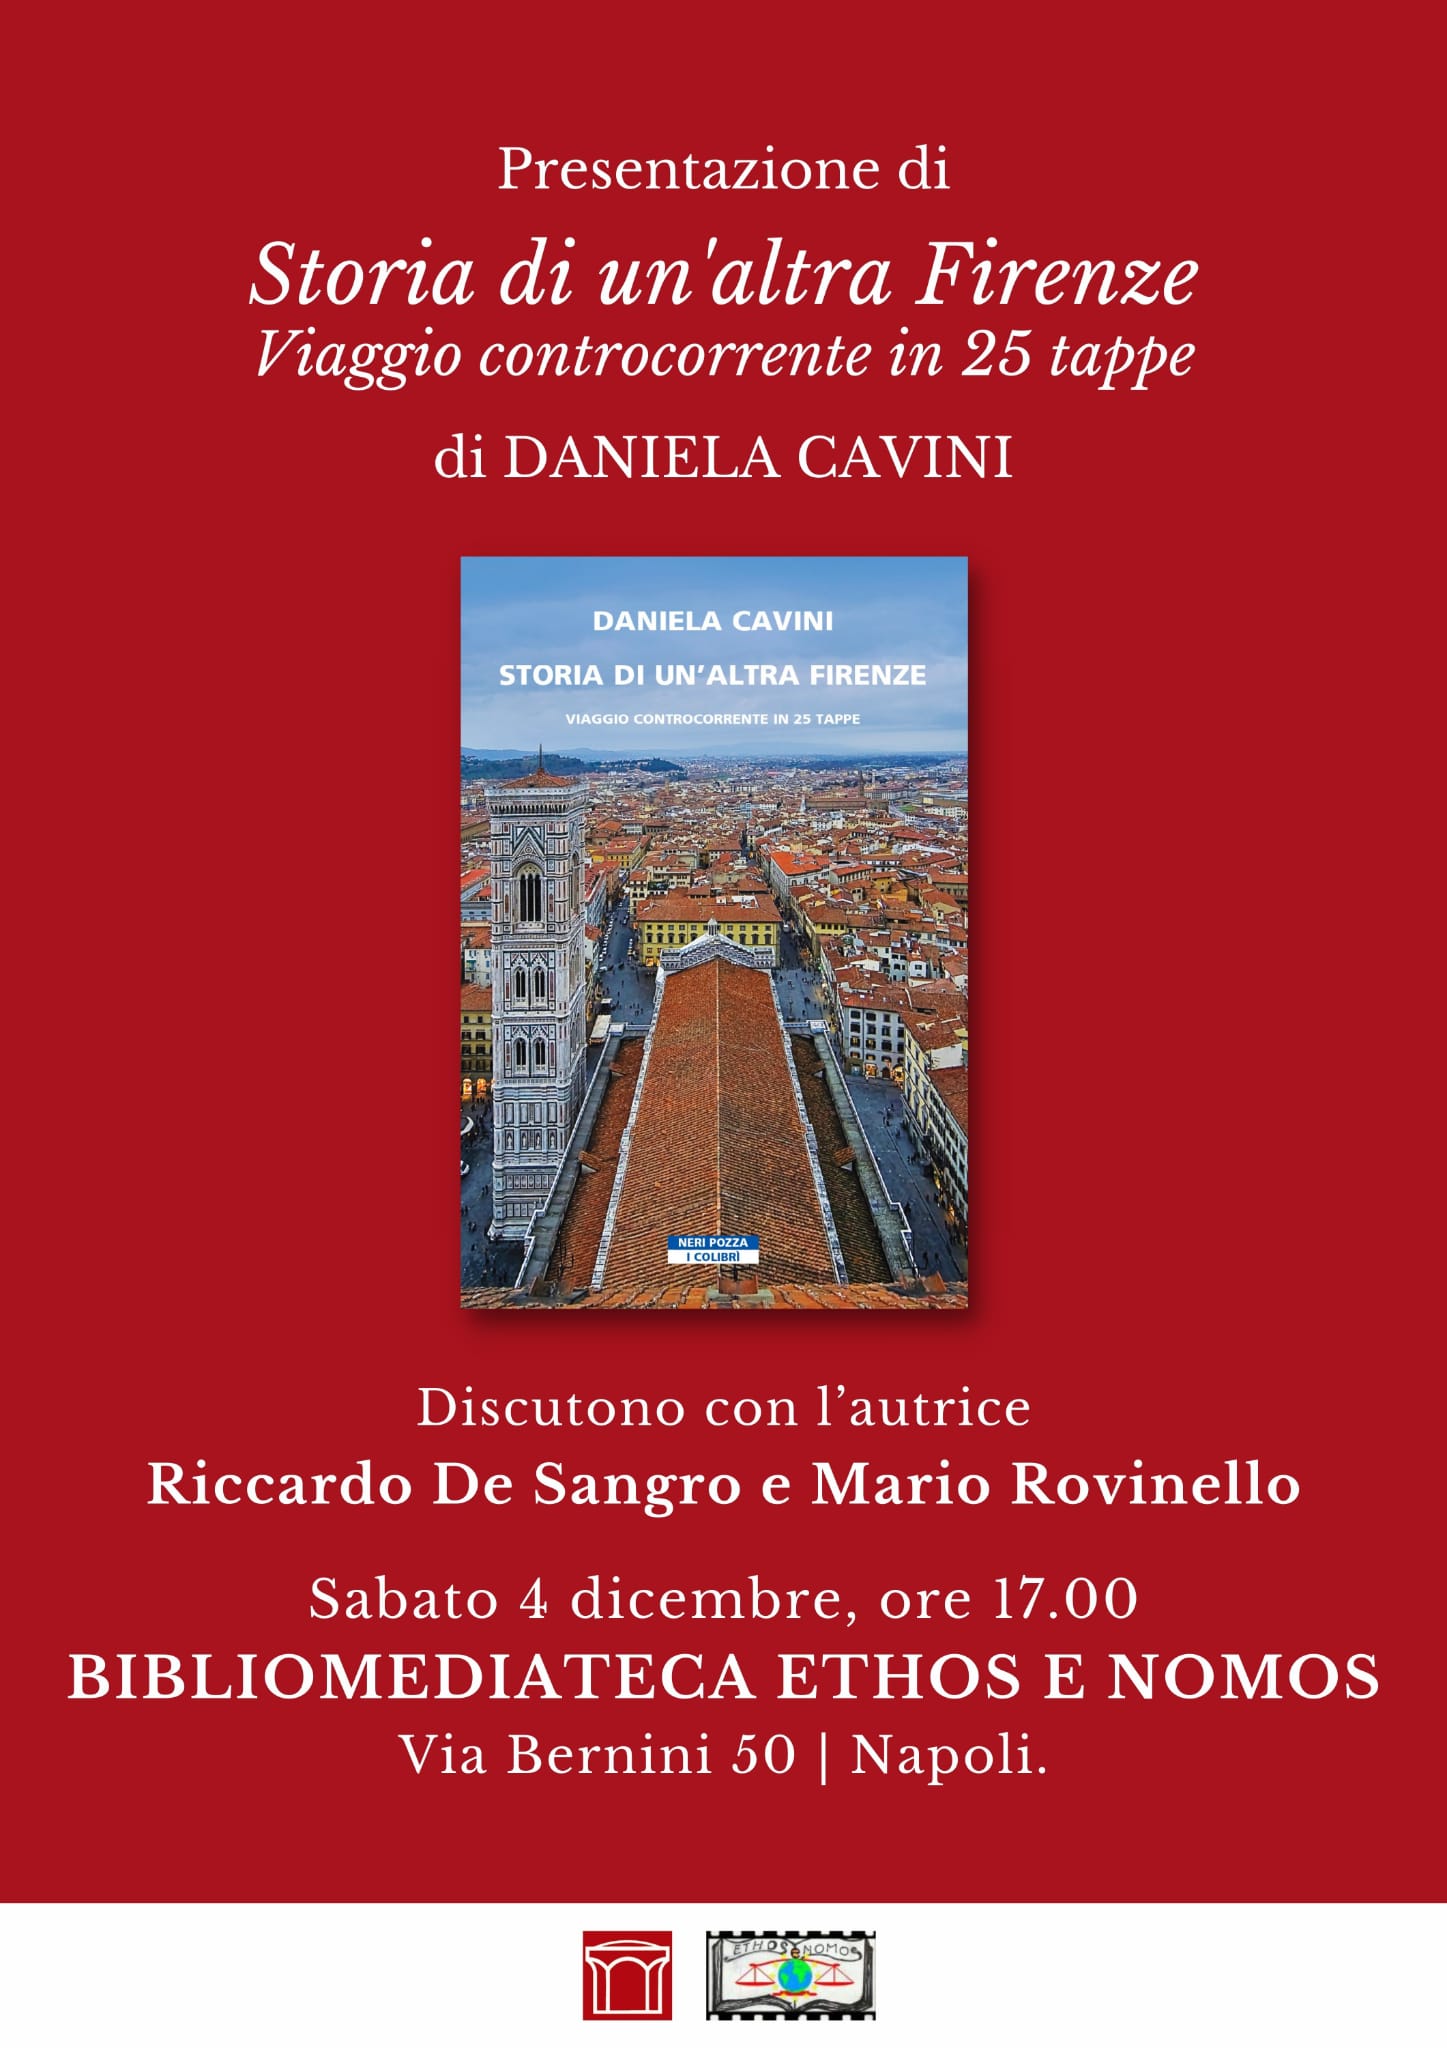 Presentazione del libro di Daniela CAVINI "Storia di un'altra Firenze"